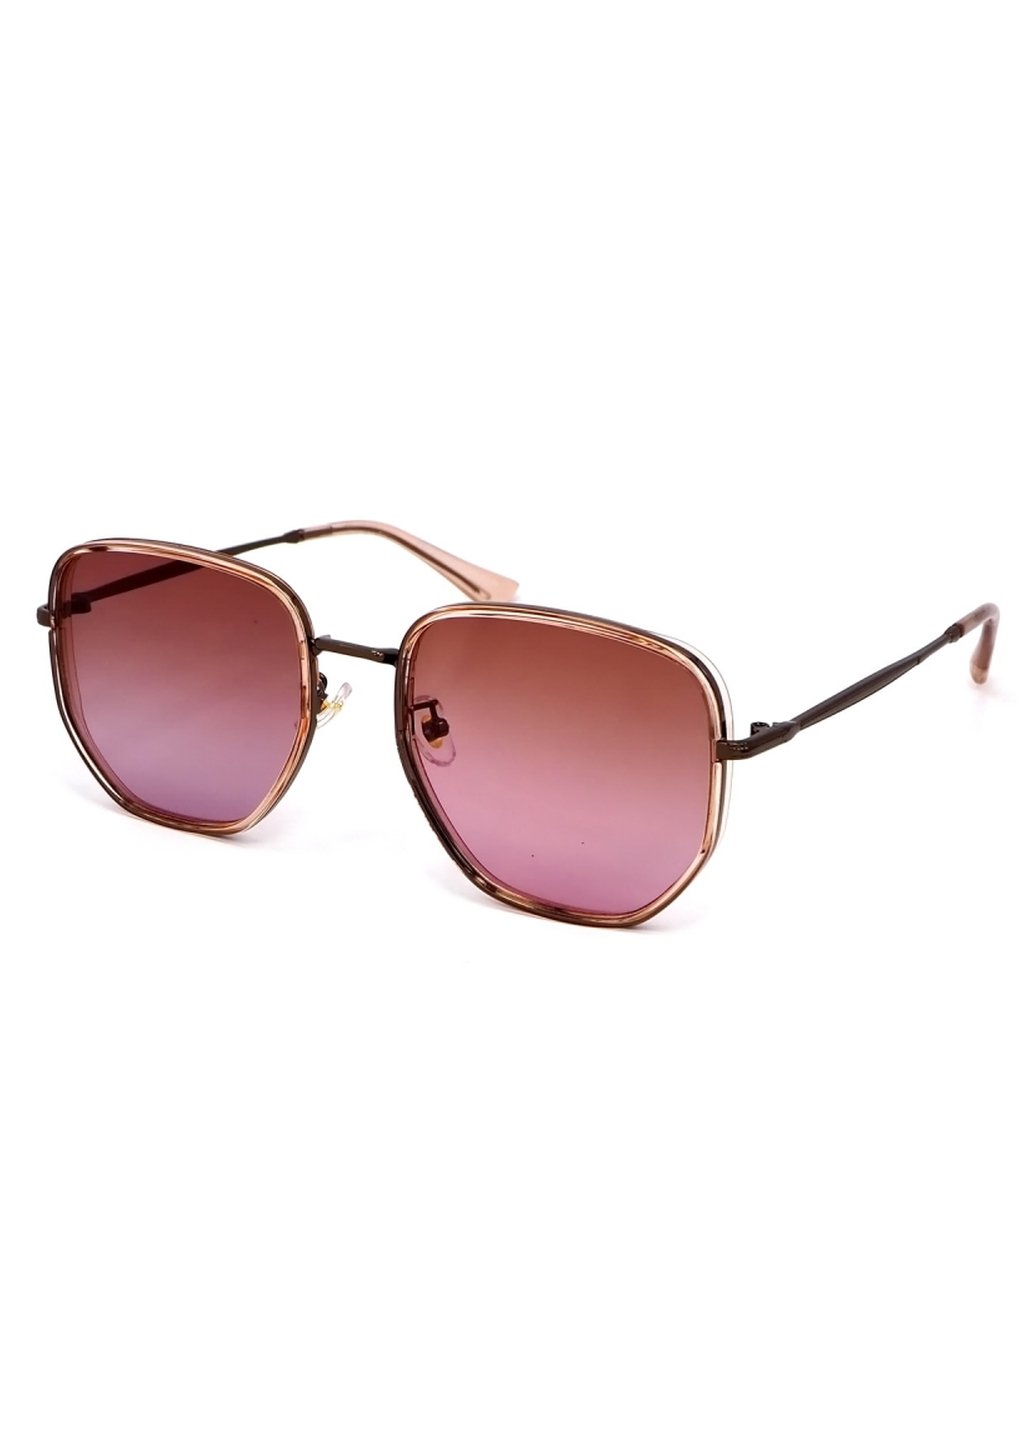 Купить Женские солнцезащитные очки Merlini с поляризацией S31816P 117037 - Розовый в интернет-магазине